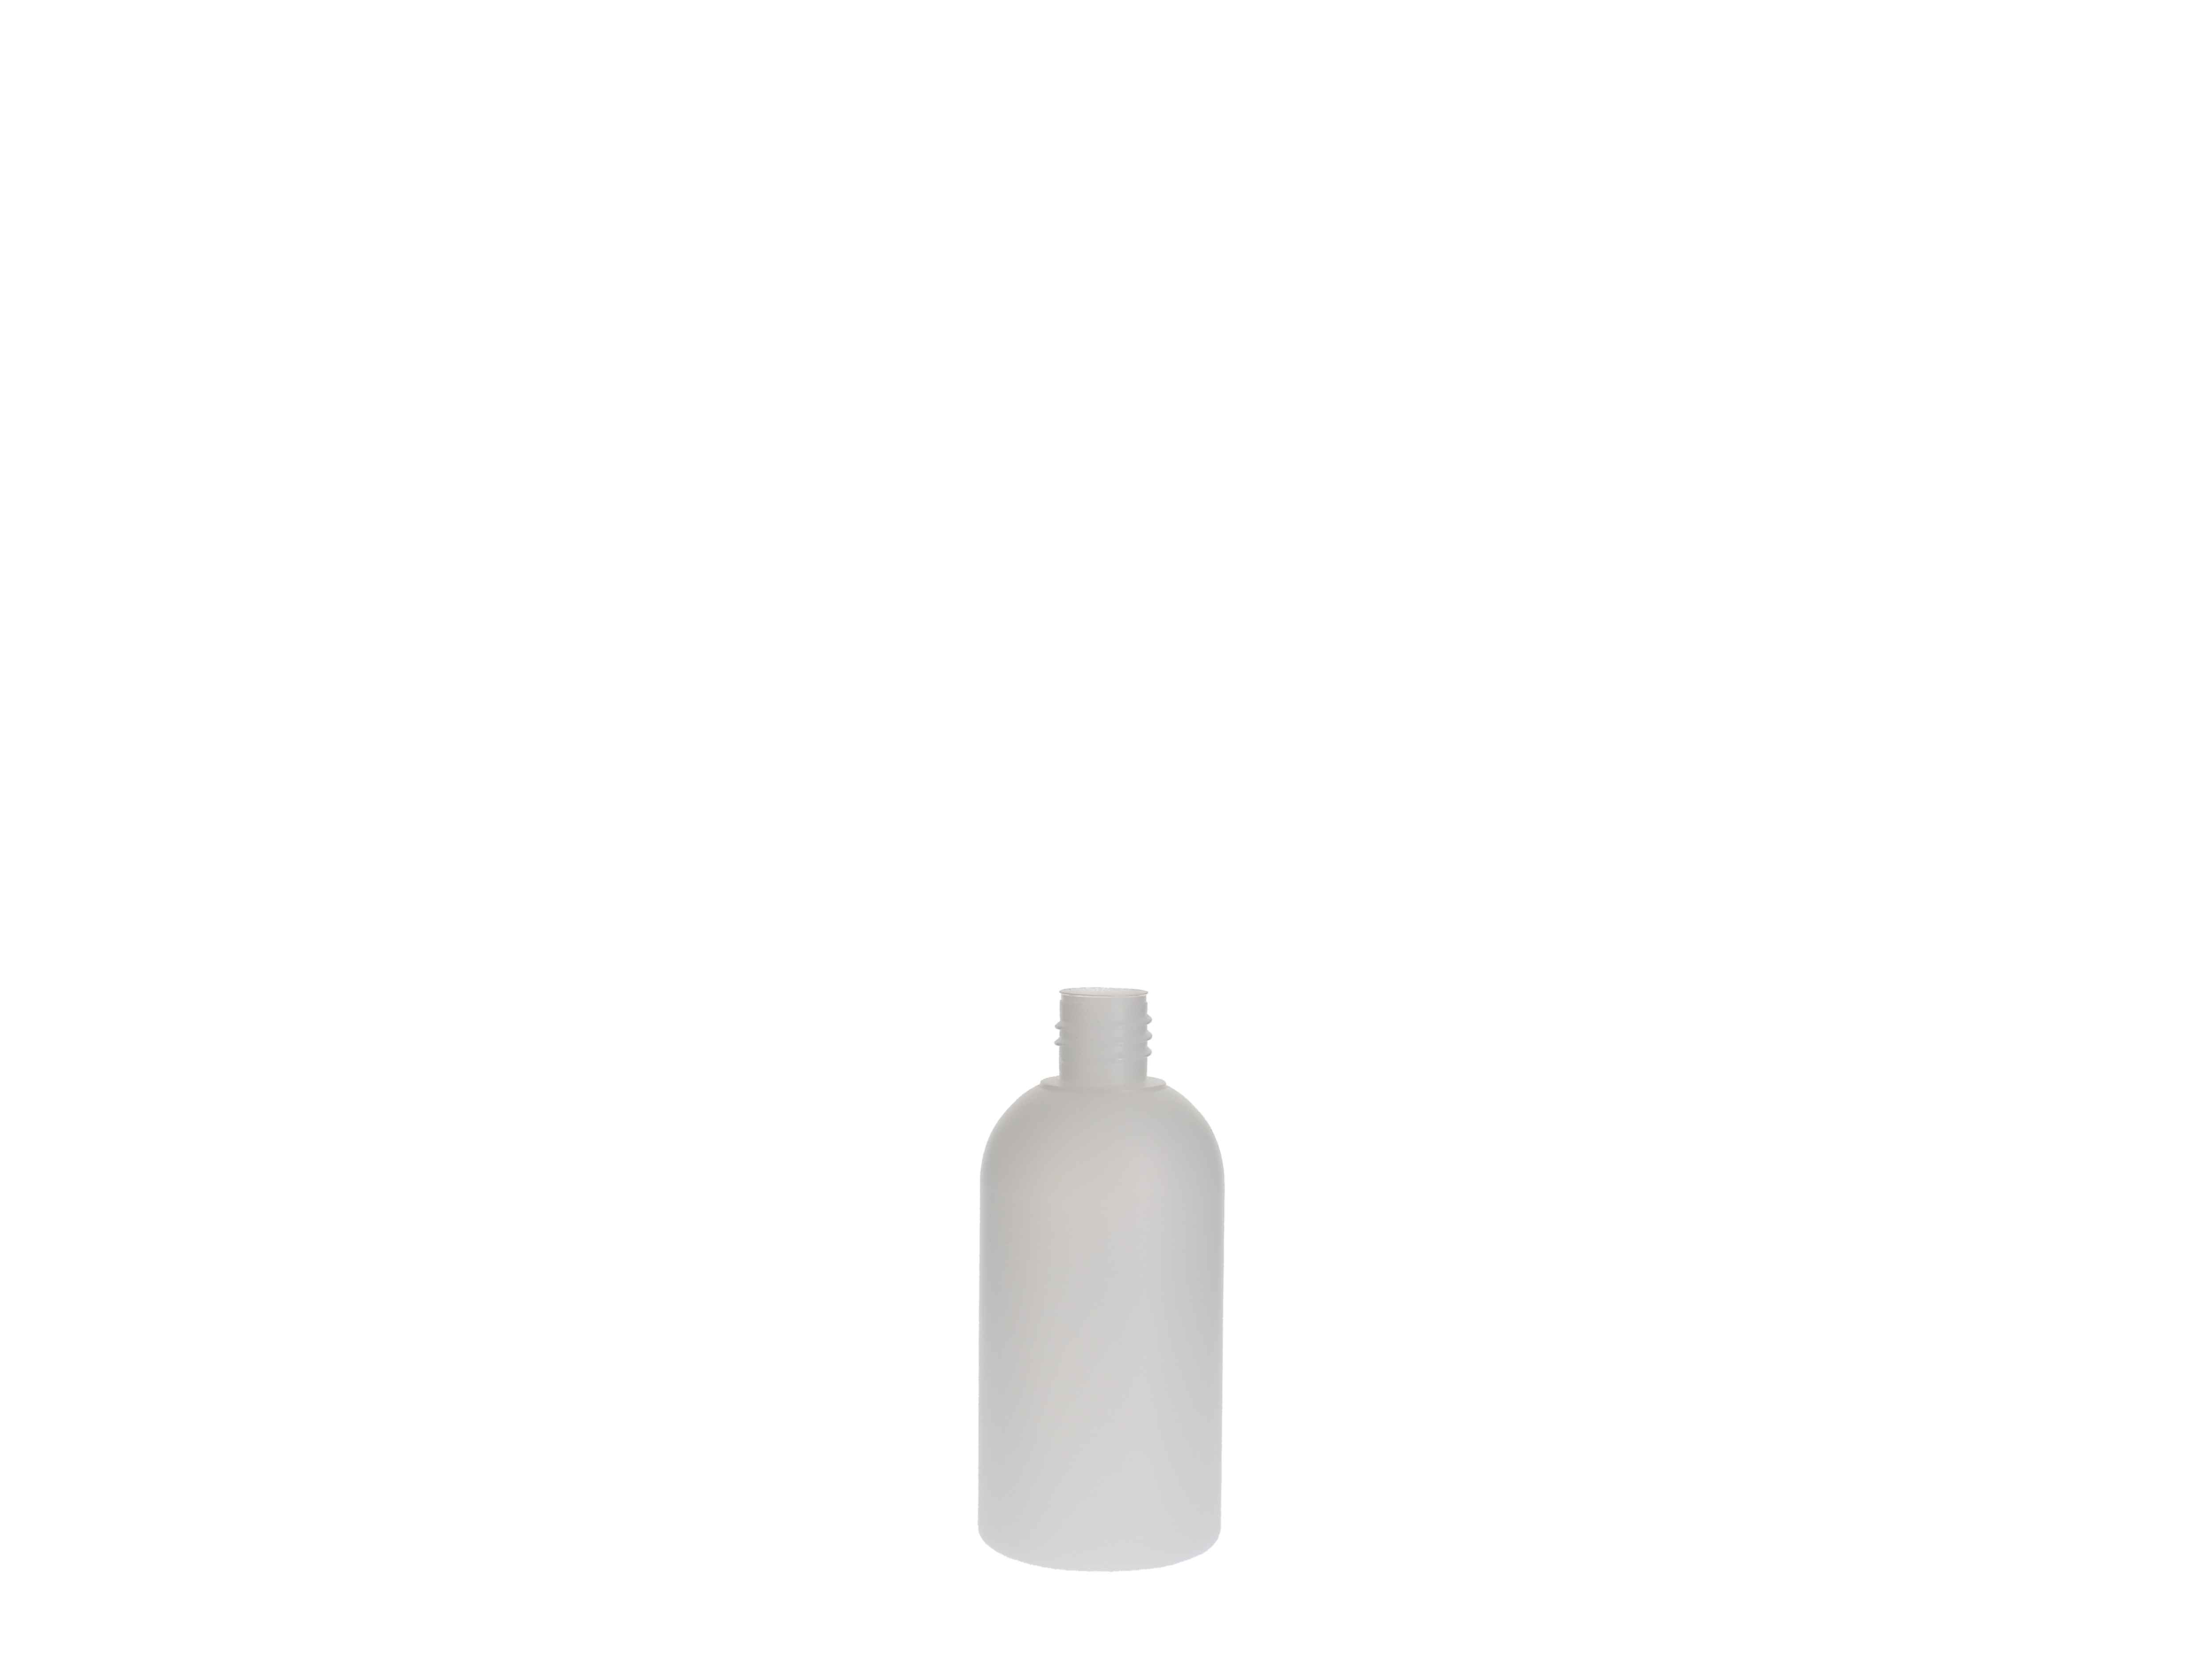    Kunststoff-Flasche rund, natur ohne Verschluss - 100ml - NICHT MEHR VERFÜGBAR